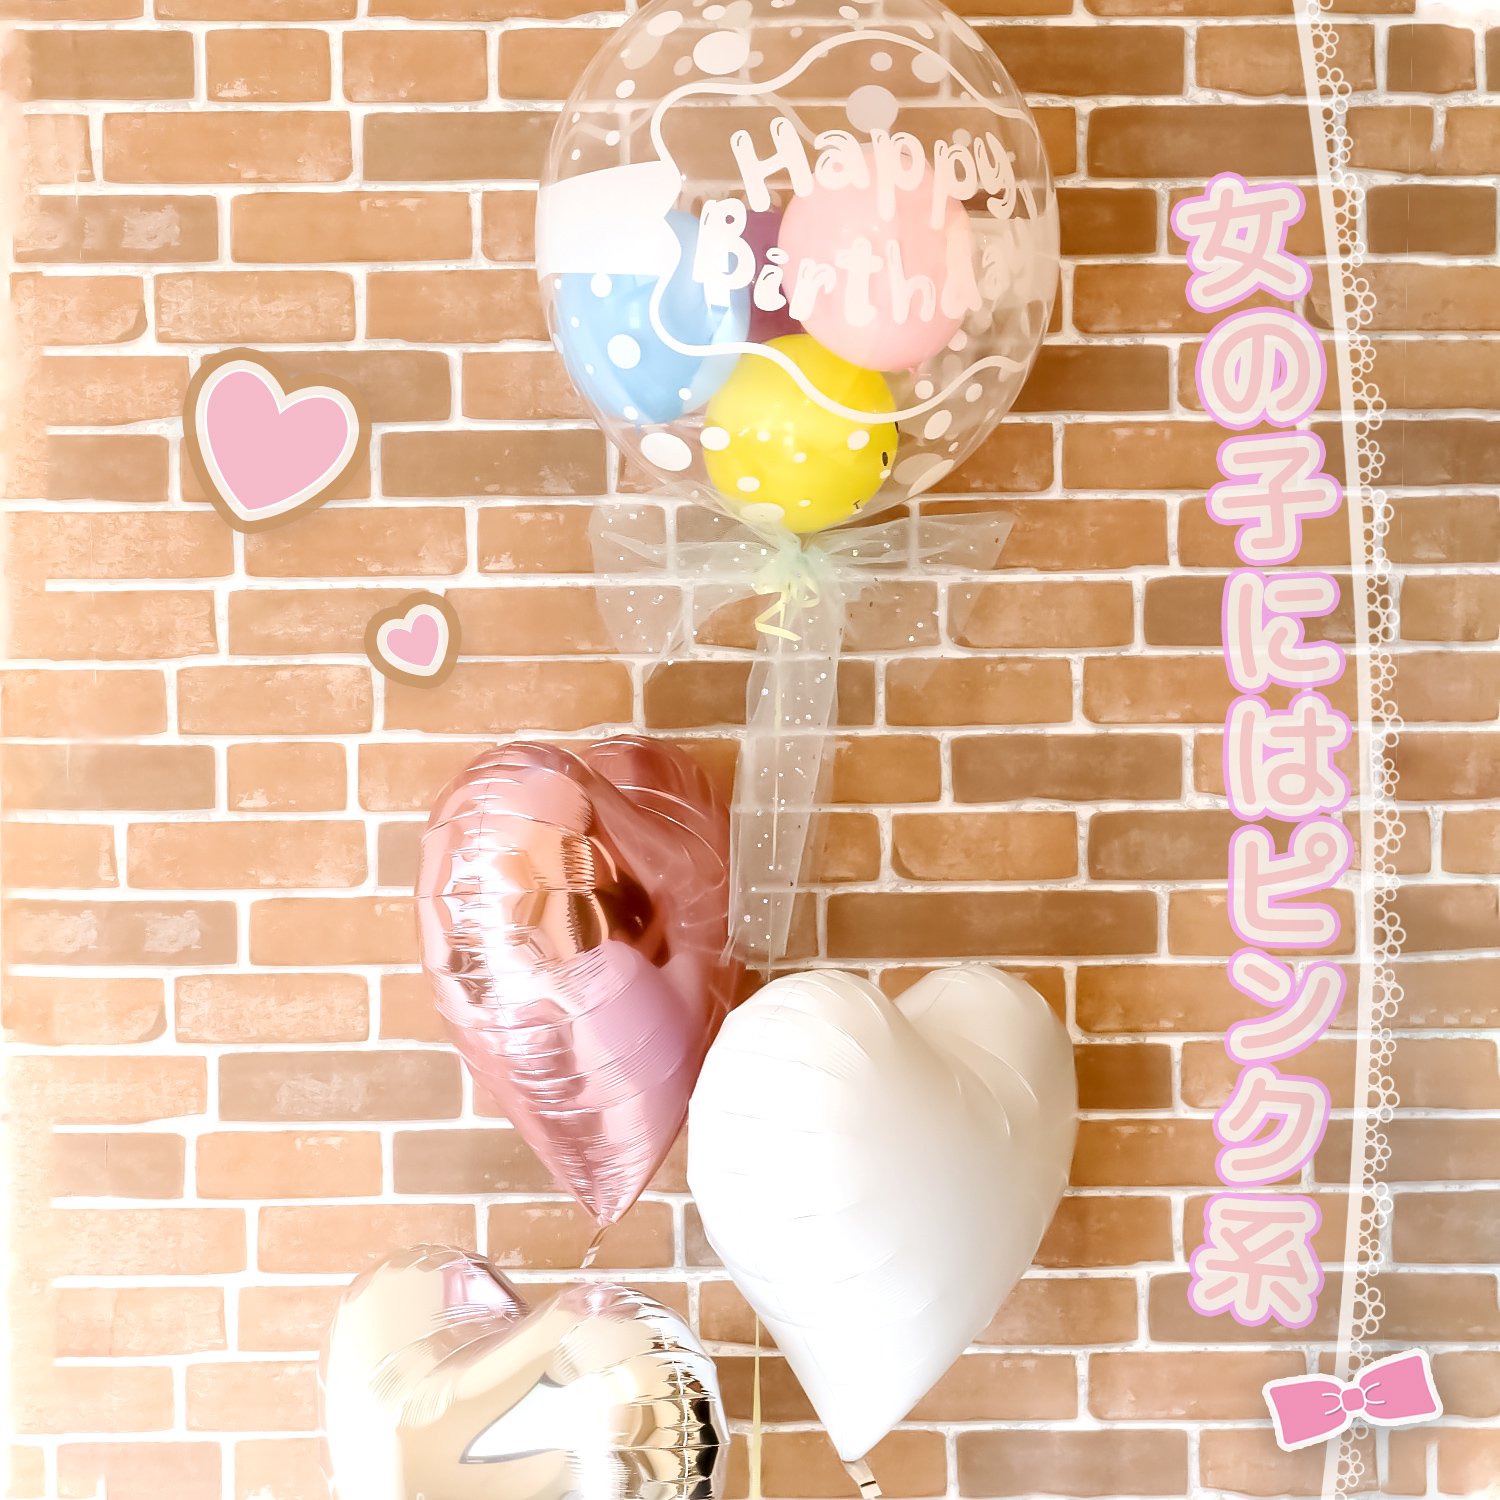 Tバルーン Hbd バルーン 風船 誕生日 お祝い サプライズ ハート 星 プレゼント 透明 Sweet Heart Balloon